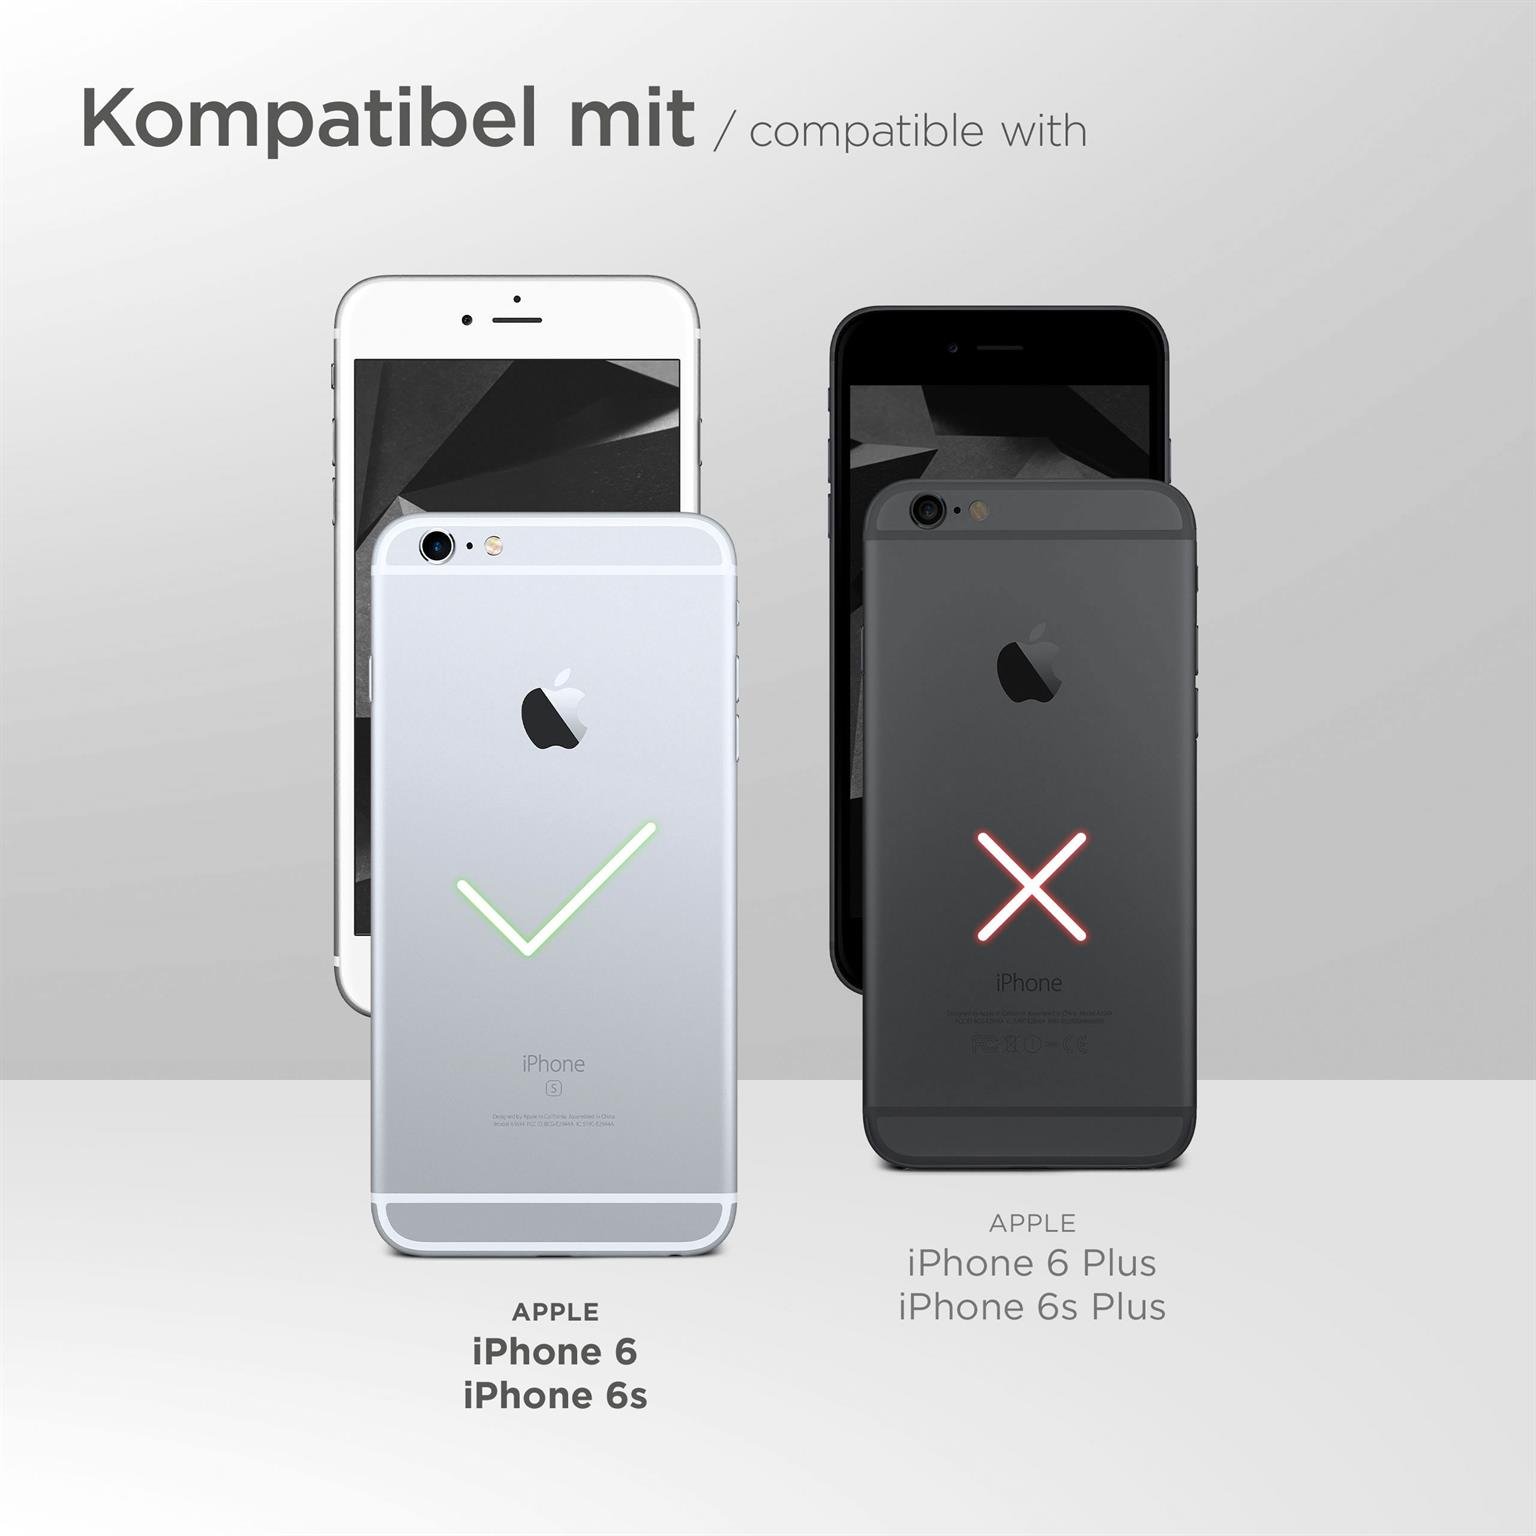 moex Mirror Case für Apple iPhone 6s – Handyhülle aus Silikon mit Spiegel auf der Rückseite